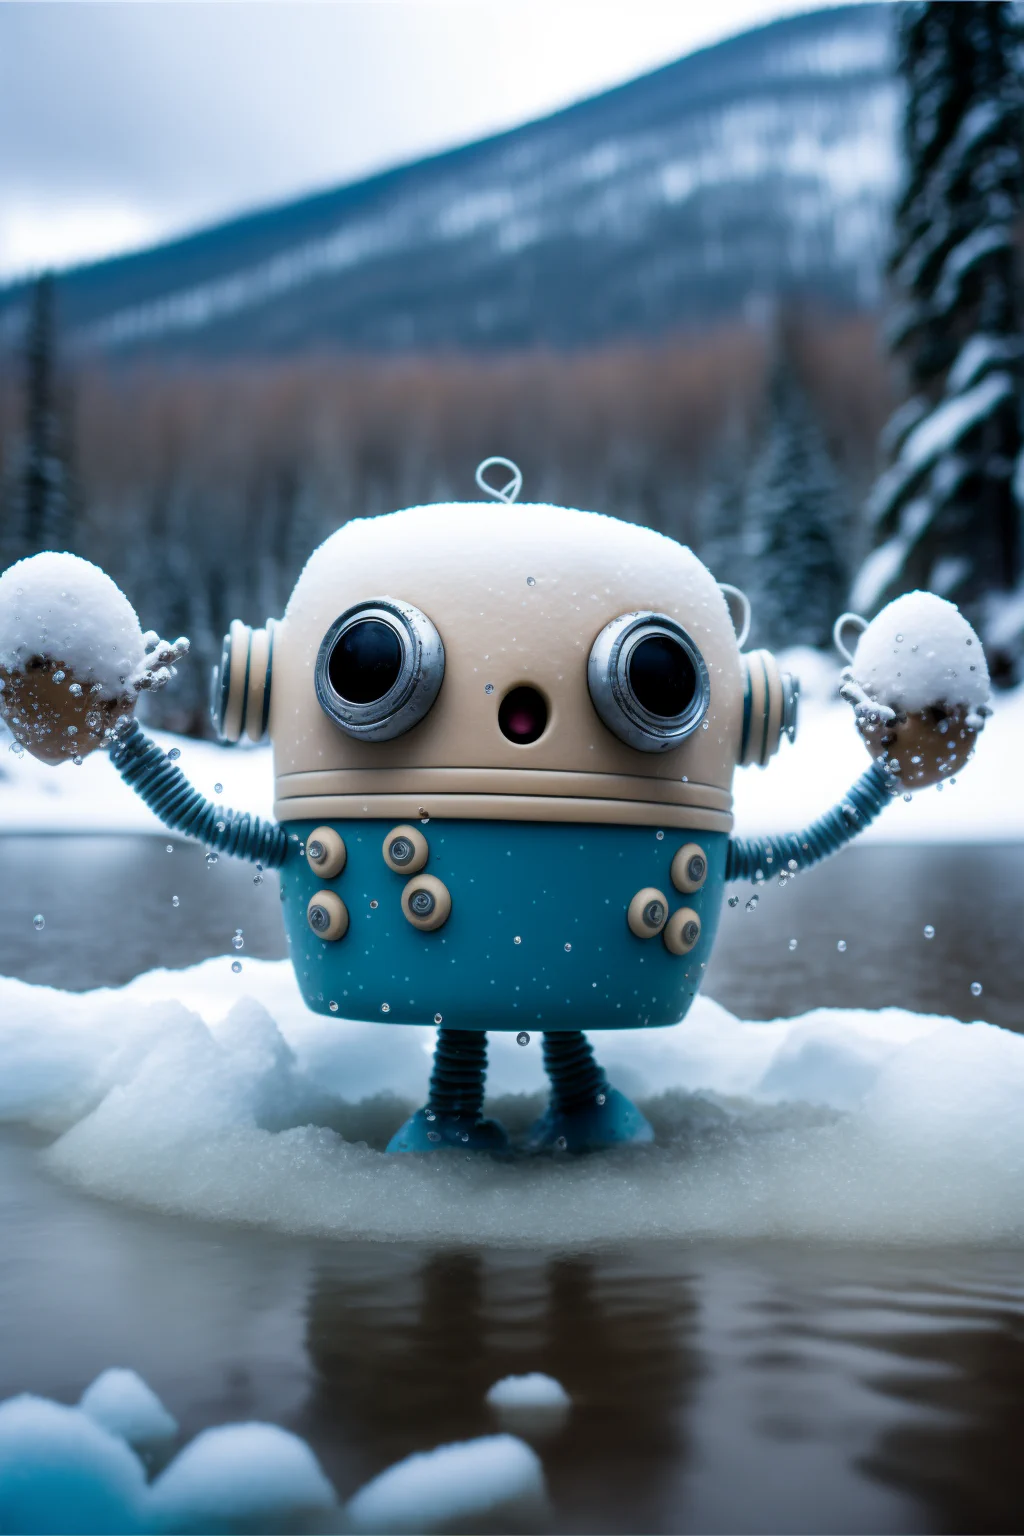 Christoph_C._Cemper_Cute_robot_dancing_snow_robotic_body_round__7df20855-a459-4f84-9293-0bf1e71f41f4